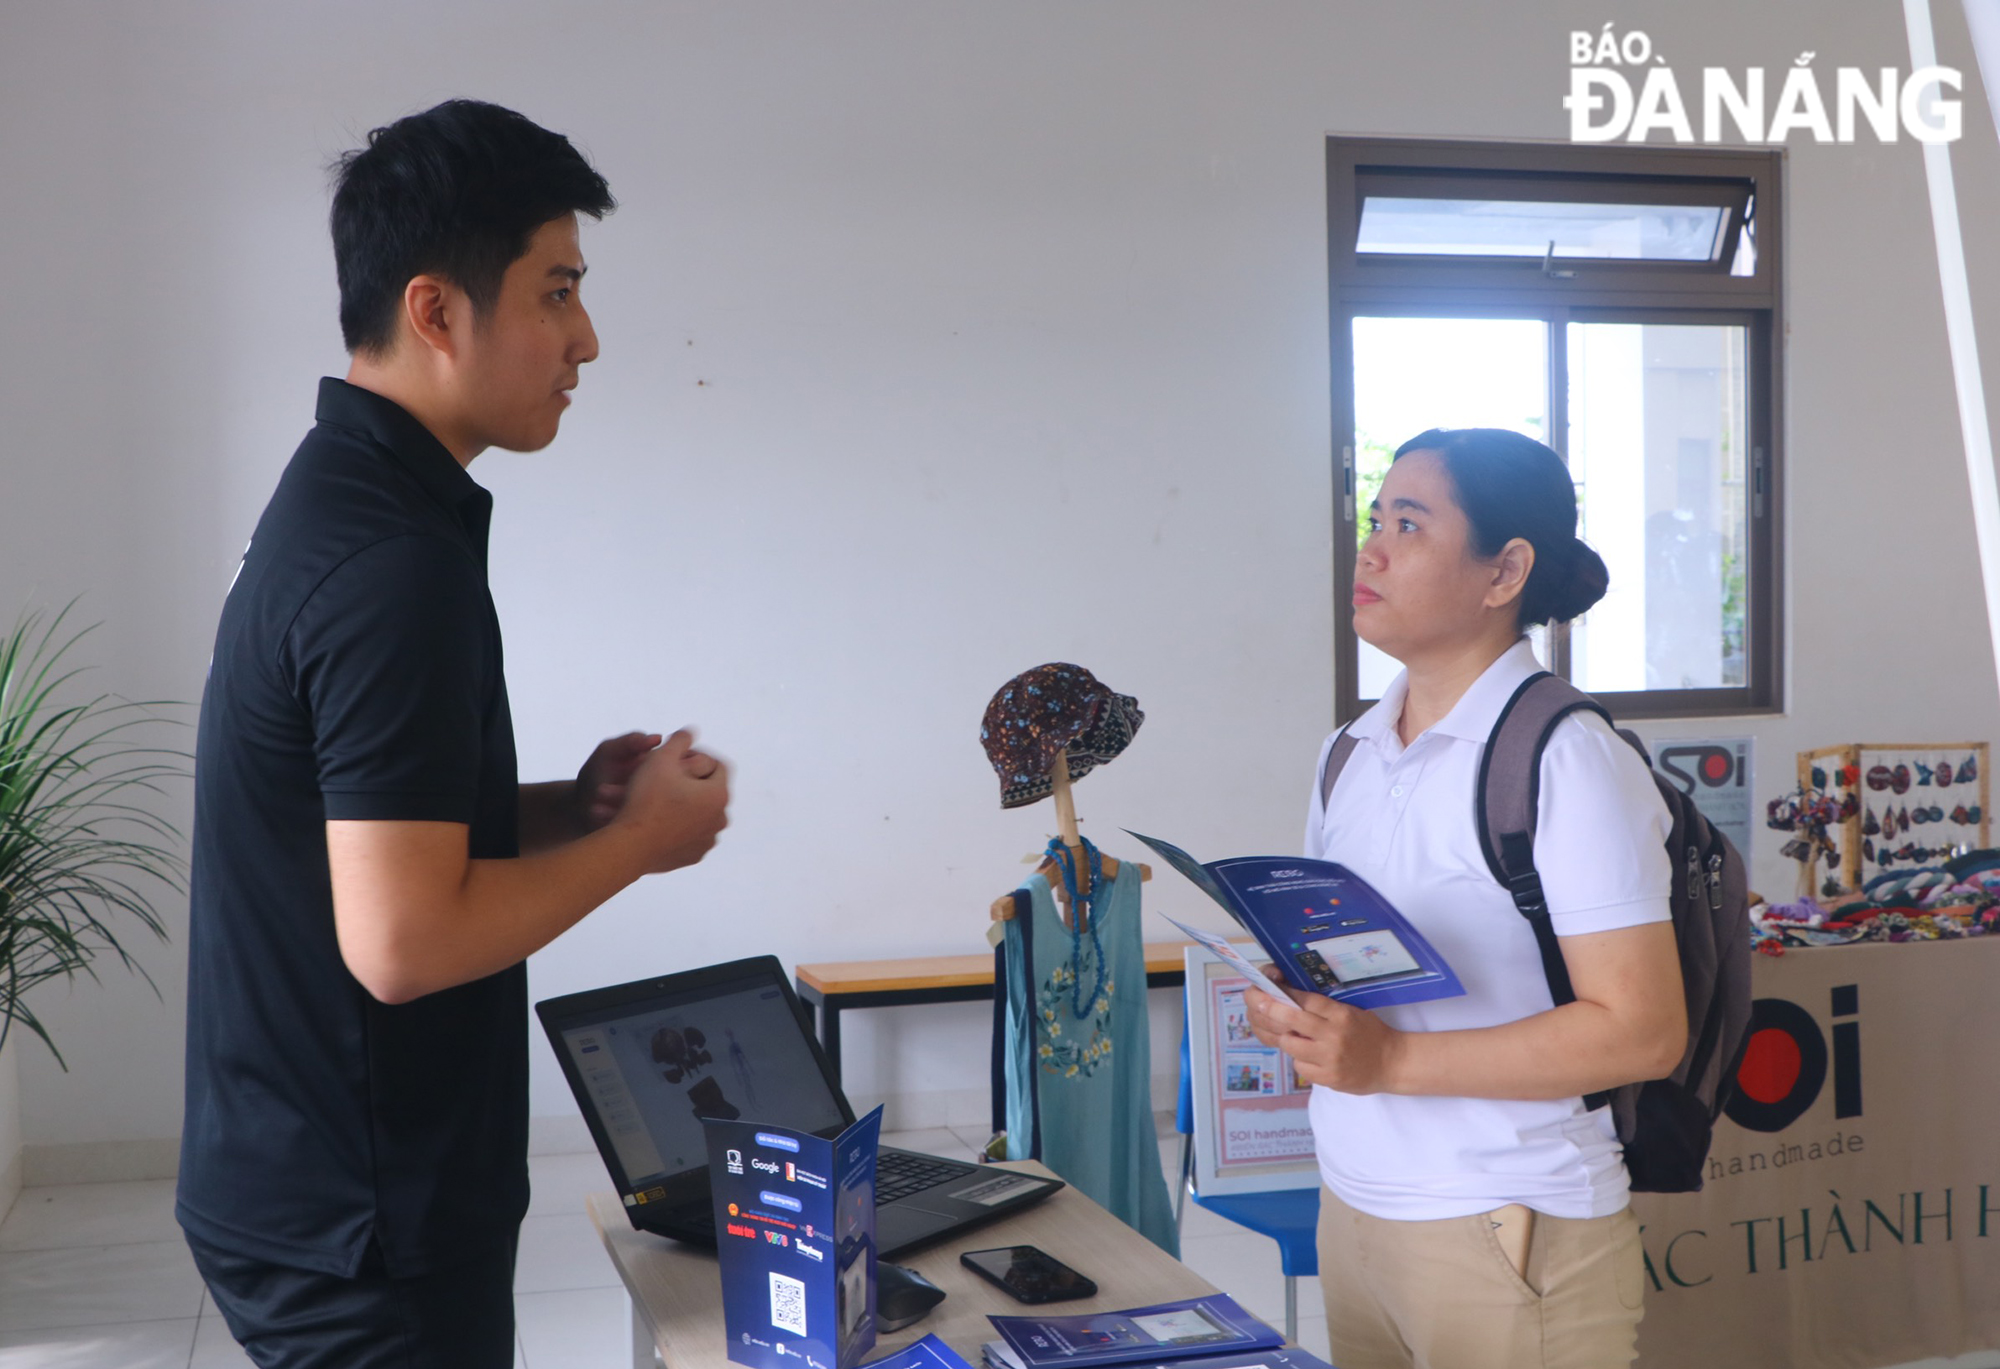 A Da Nang-based startup is consulting and introducing its products to a visitor at the seminar on the morning of November 10 at the FPT University Da Nang. Photo: VAN HOANG